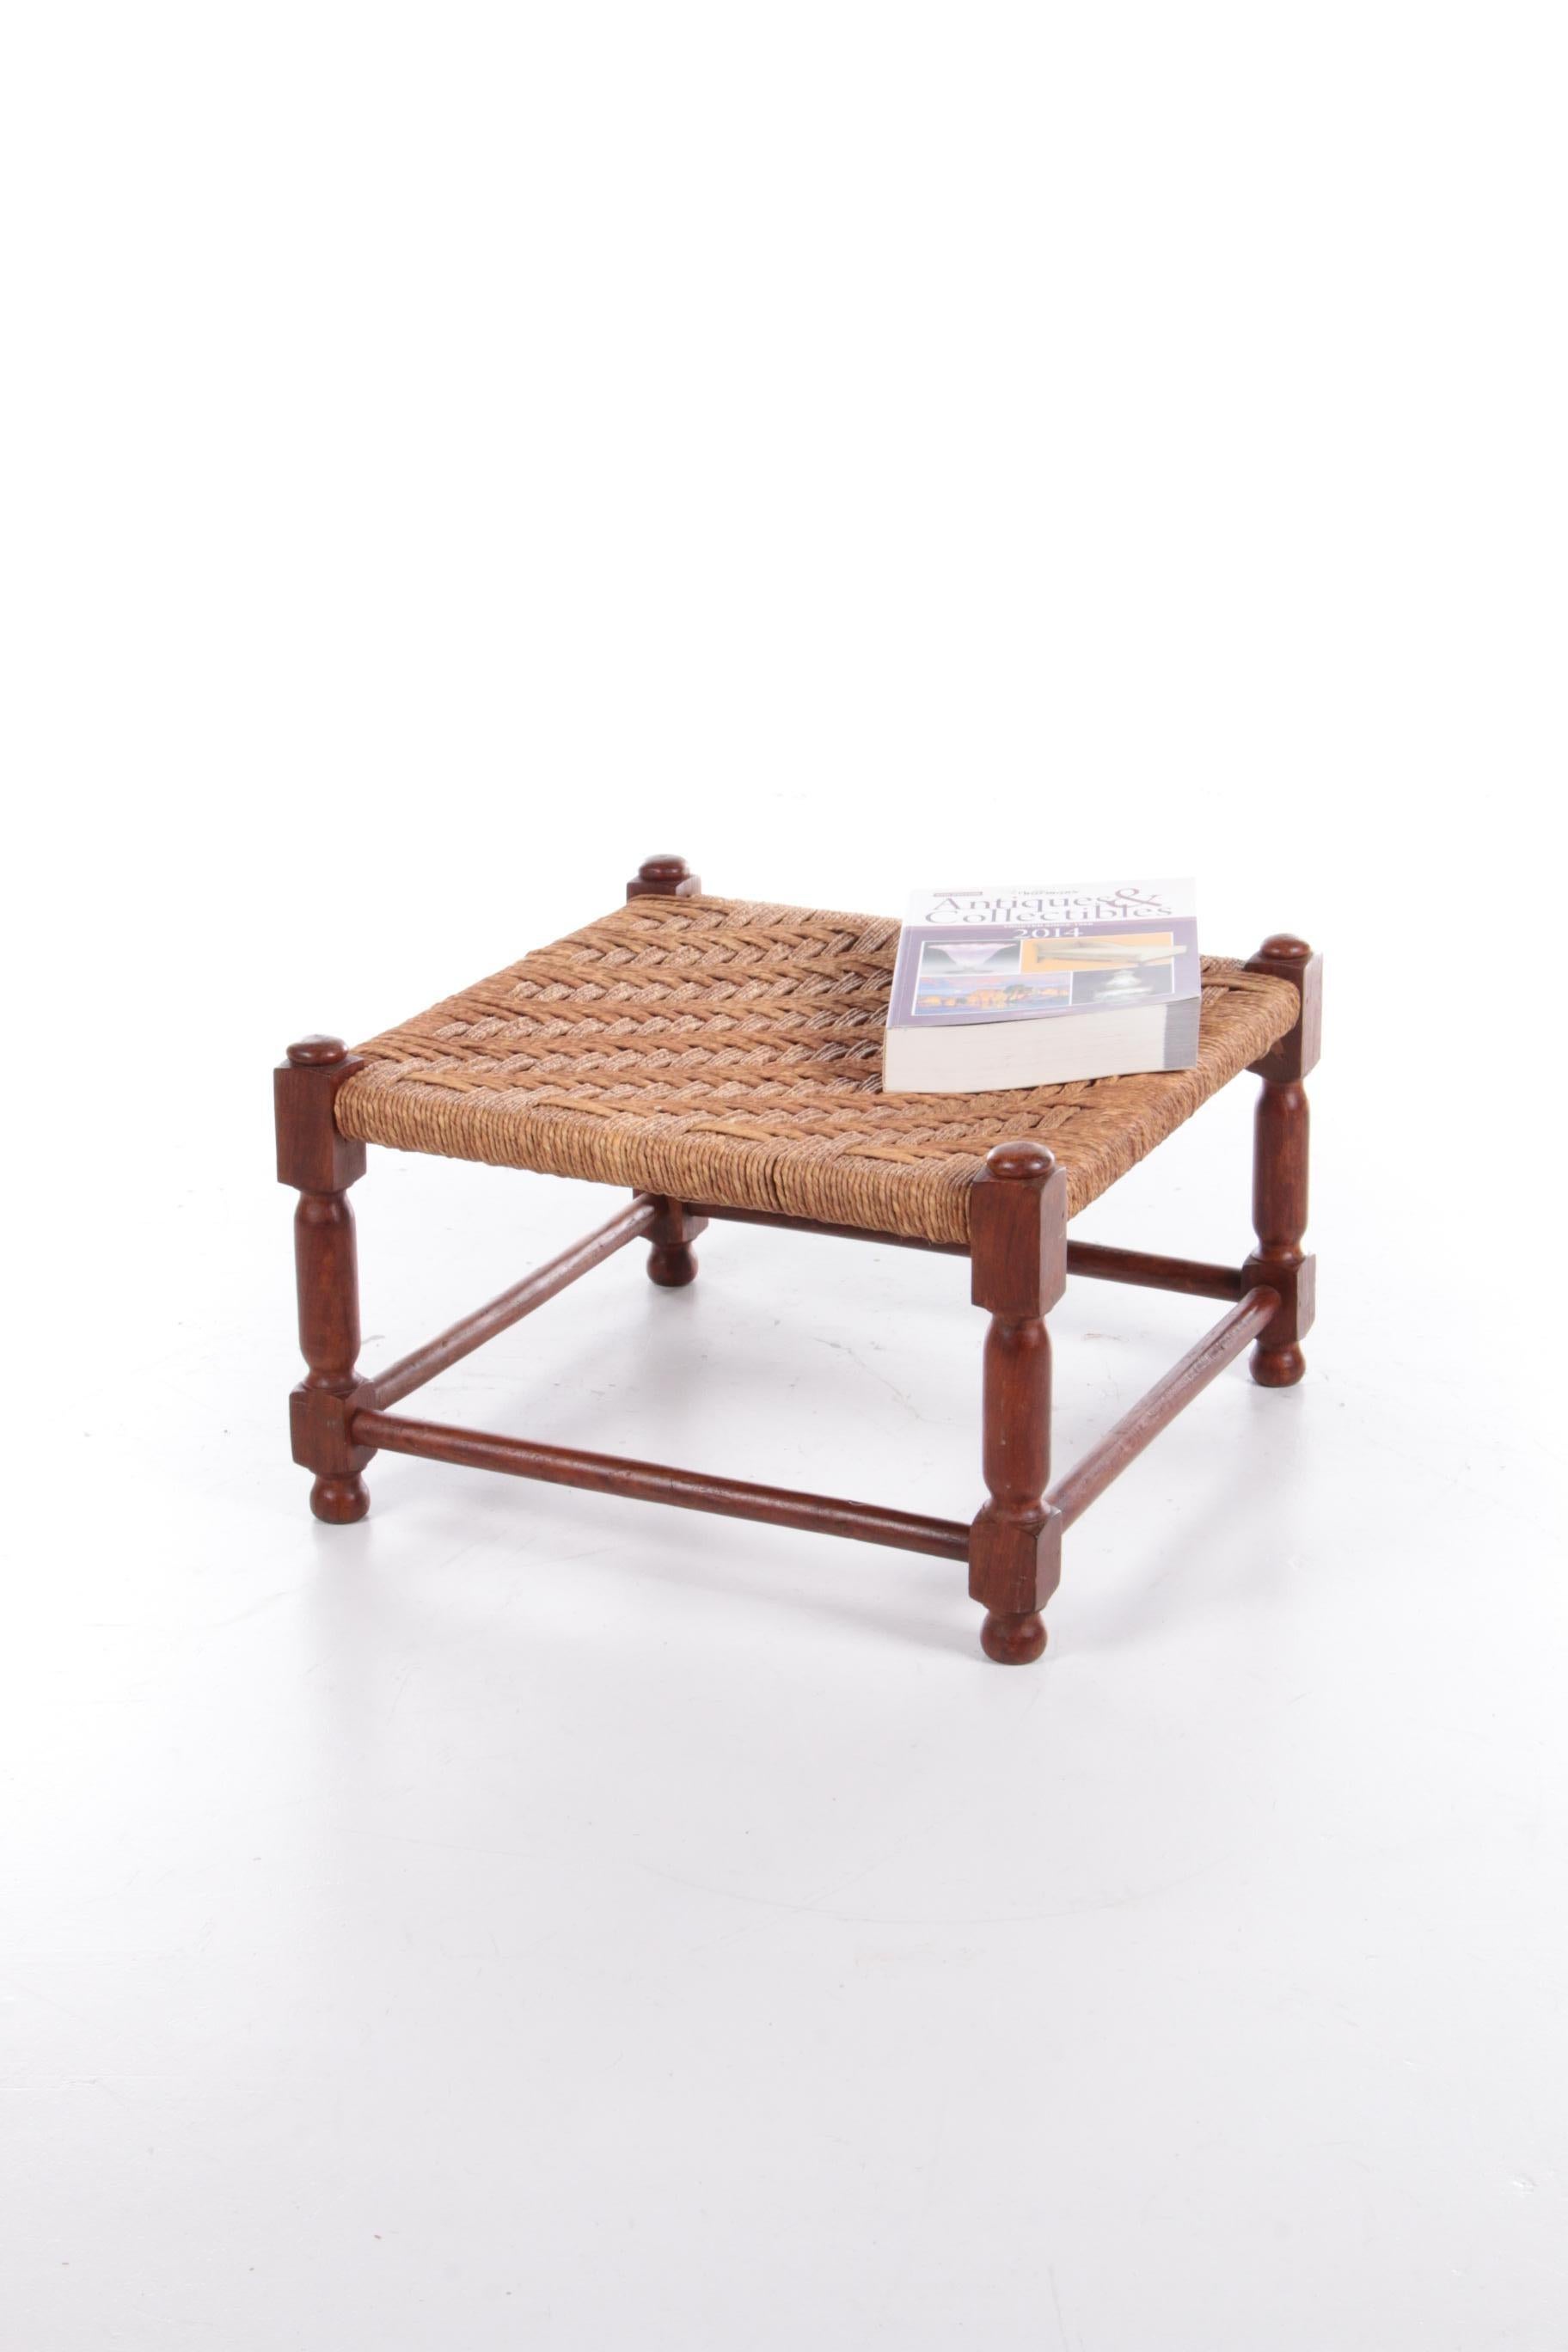 Il s'agit d'un magnifique tabouret en chêne avec un siège en jute tissé.

Il présente un beau motif et les pieds en bois sont très joliment sculptés.

Le tabouret est originaire de France et a été fabriqué vers les années 1960.

Il s'intègre